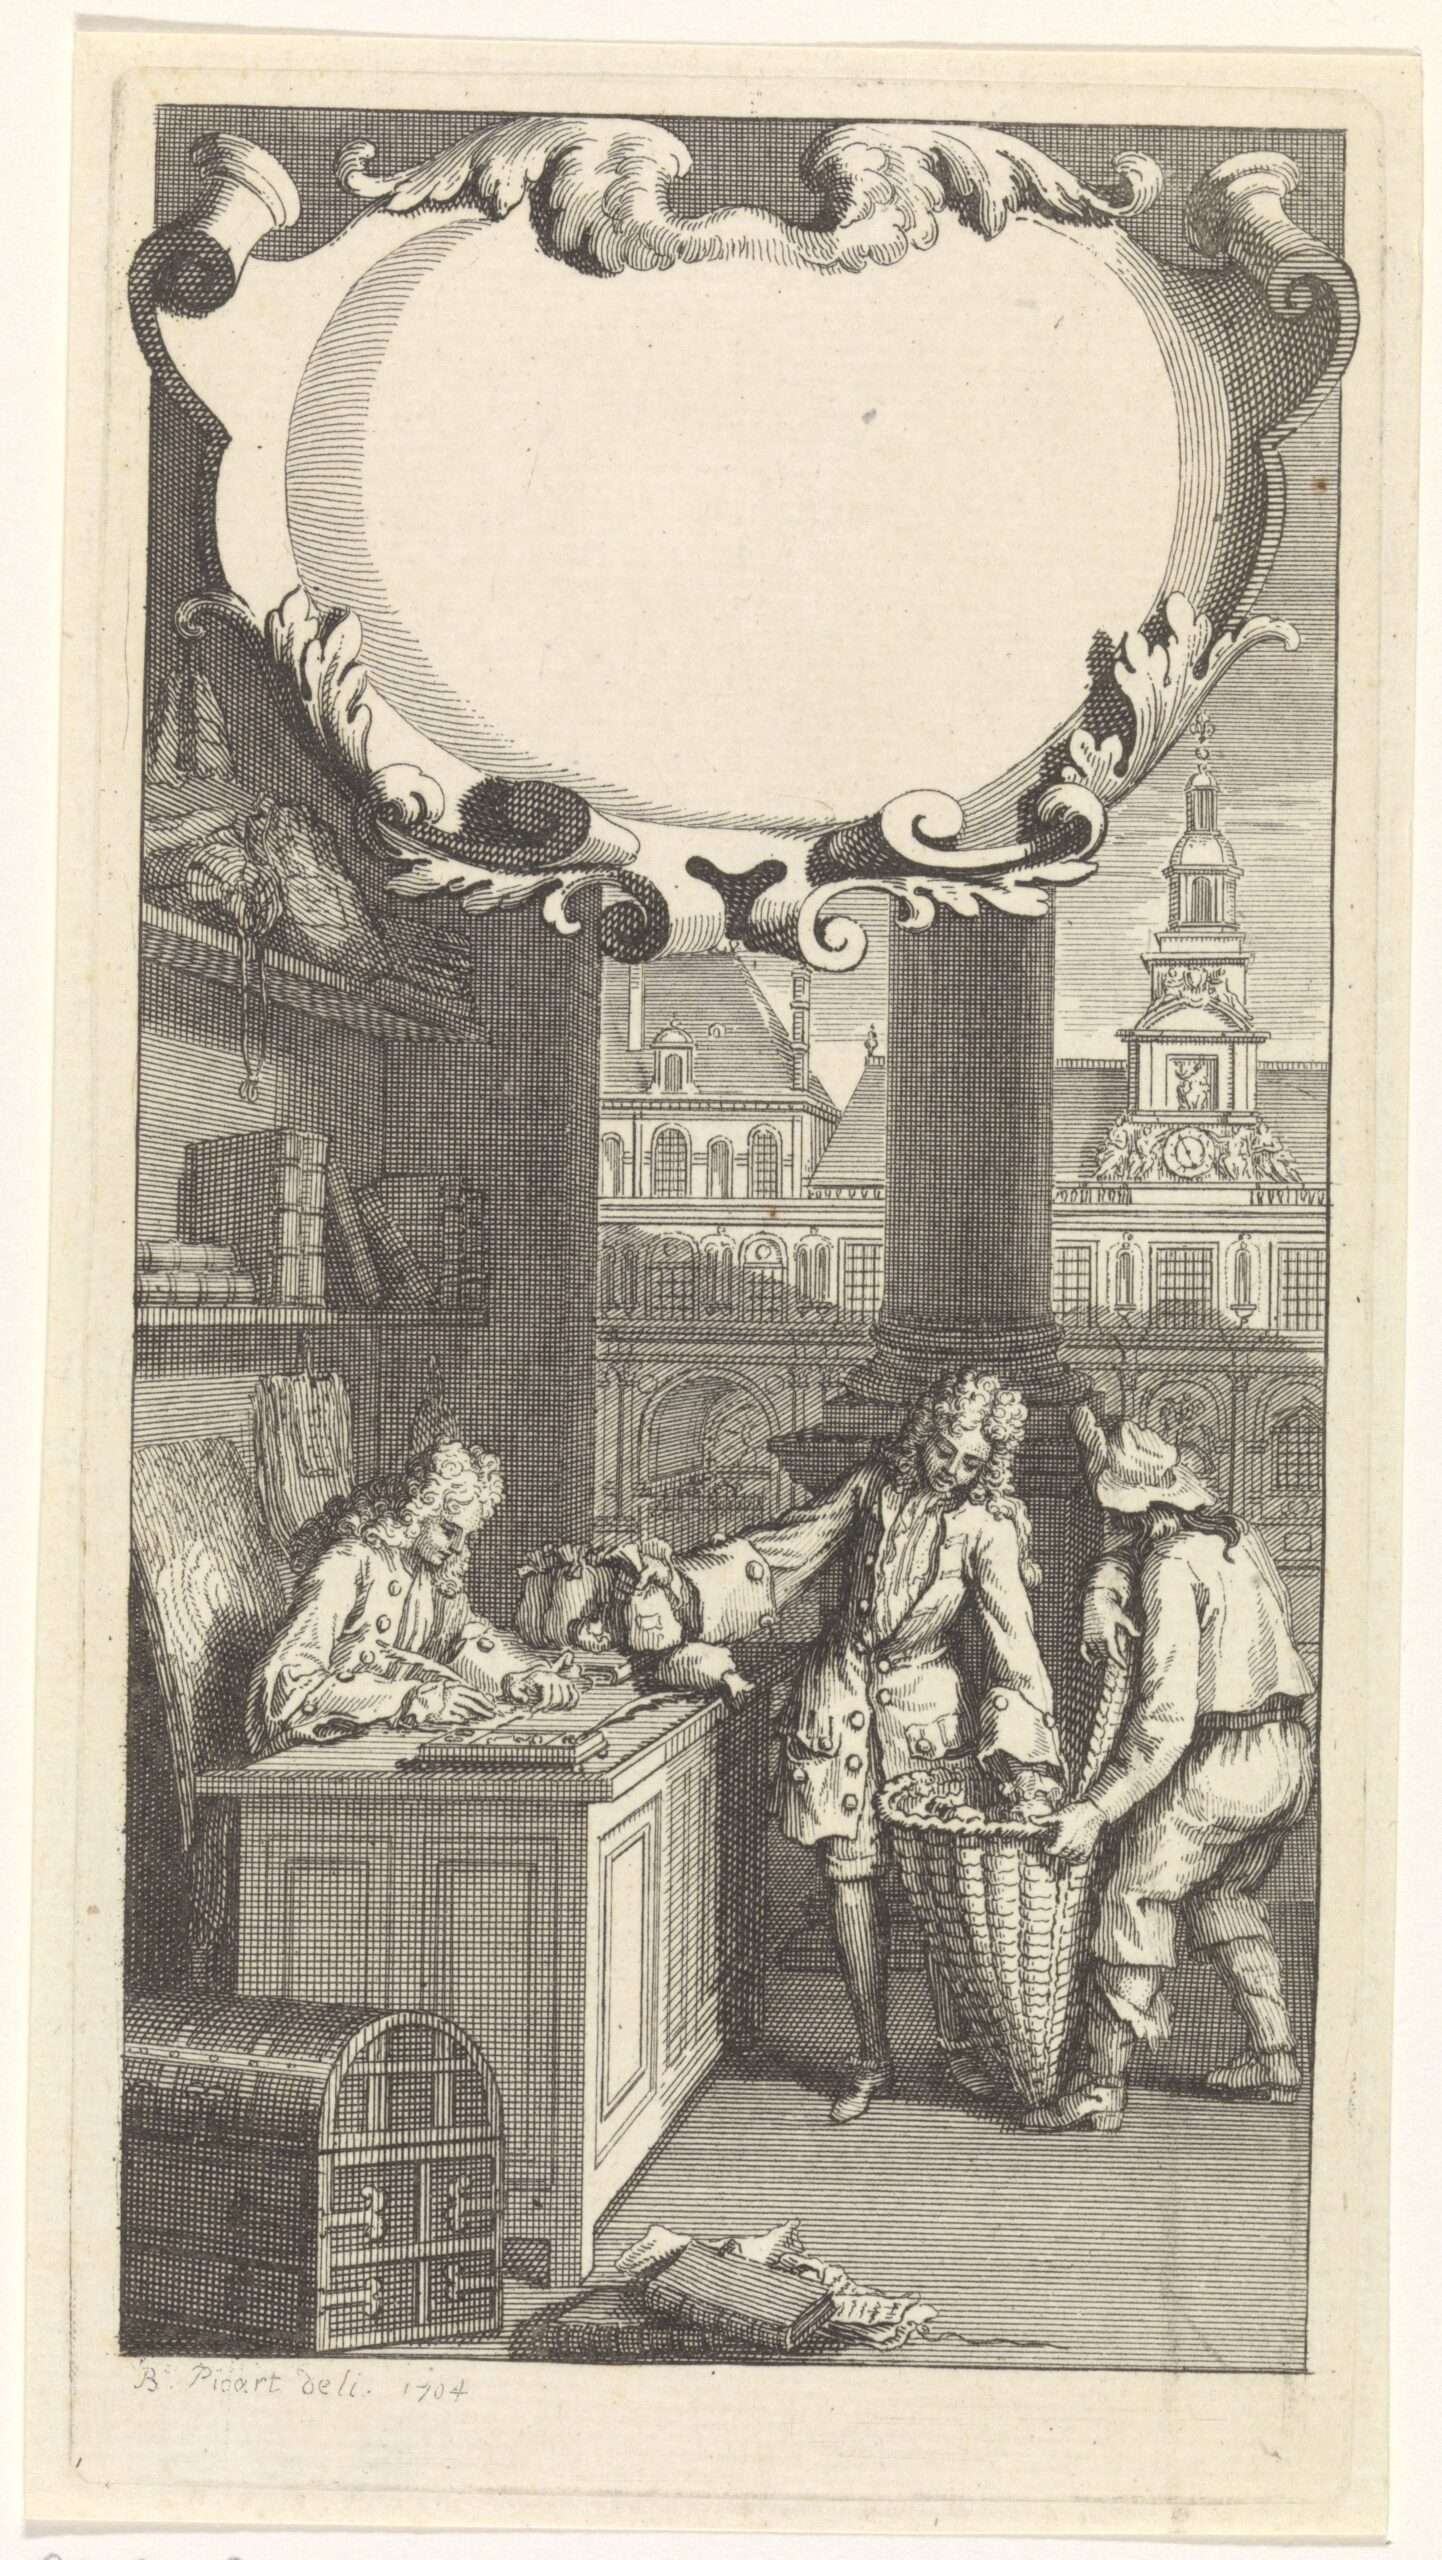 Het innen van belastingen (?)., anoniem, naar Bernard Picart, 1704